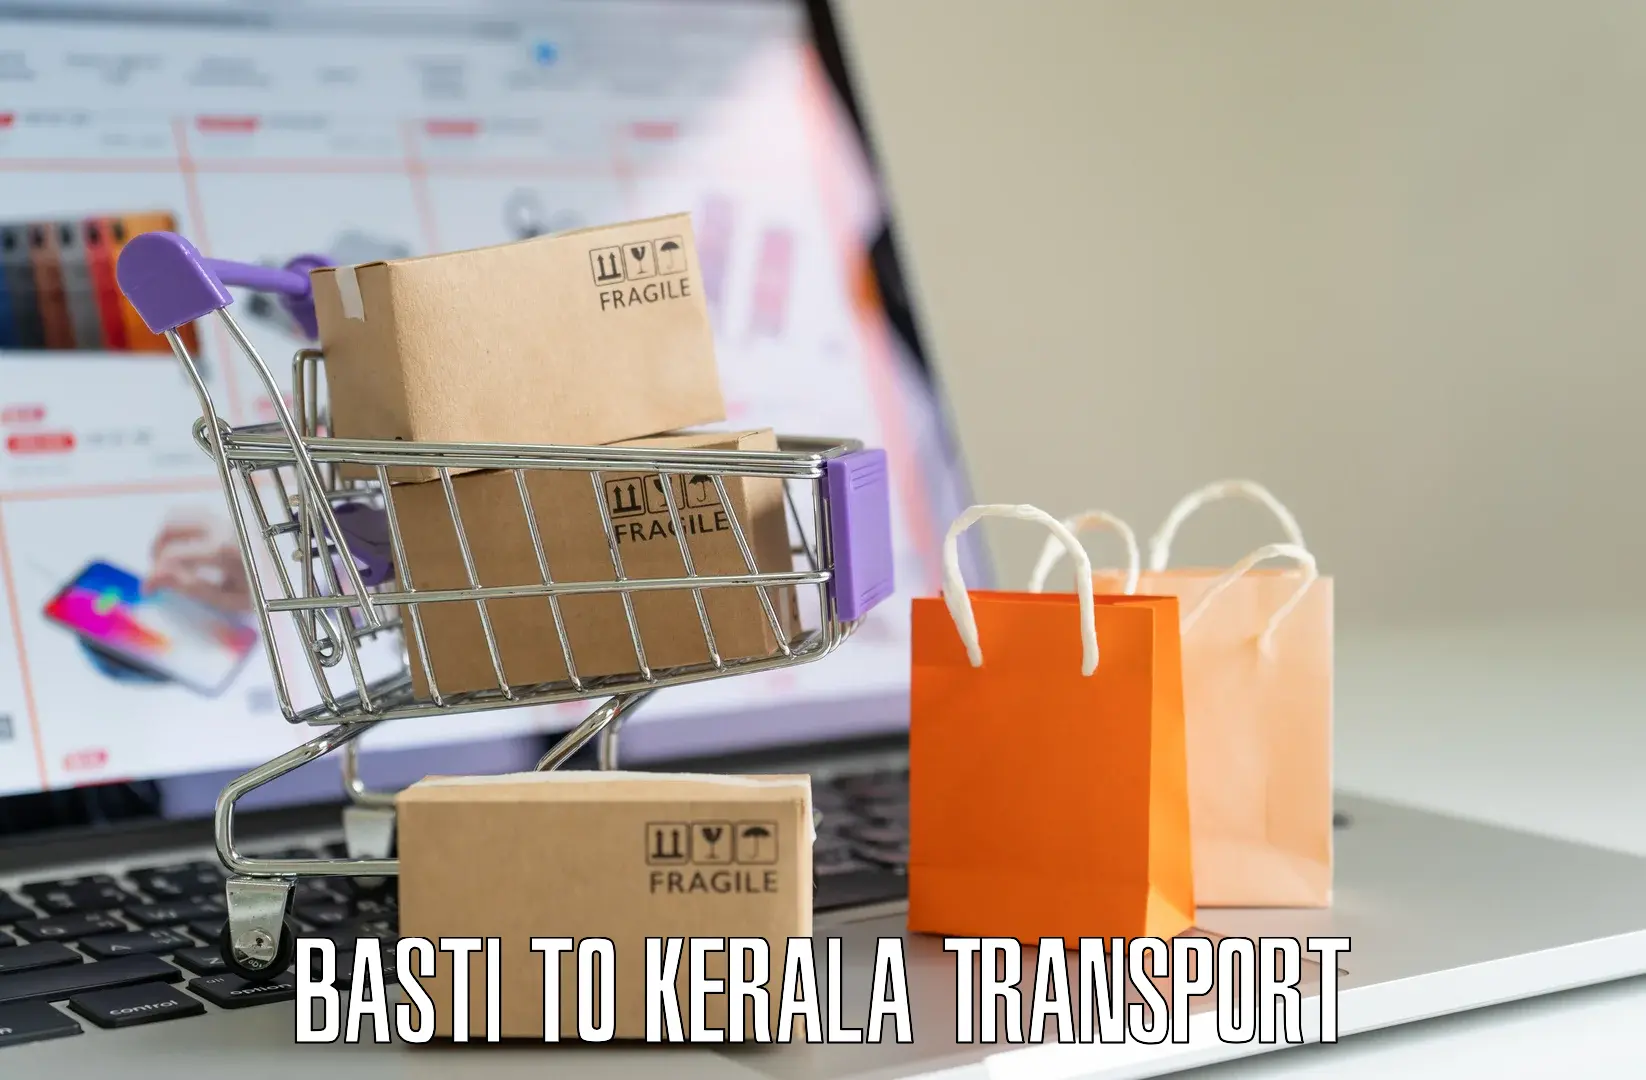 Express transport services Basti to Kothamangalam